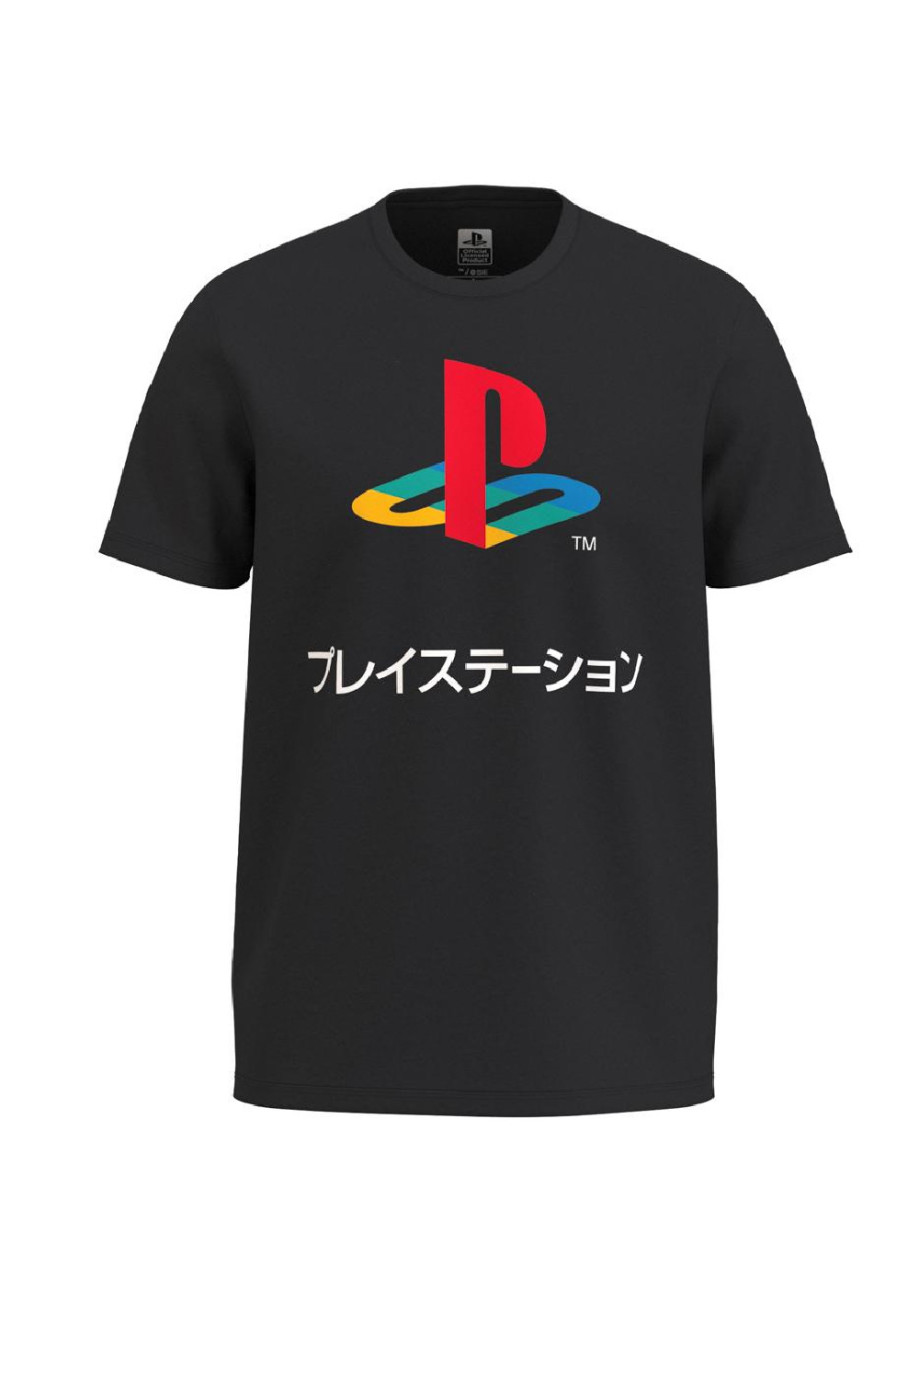 Camiseta manga corta unicolor con logo de PlayStation en frente